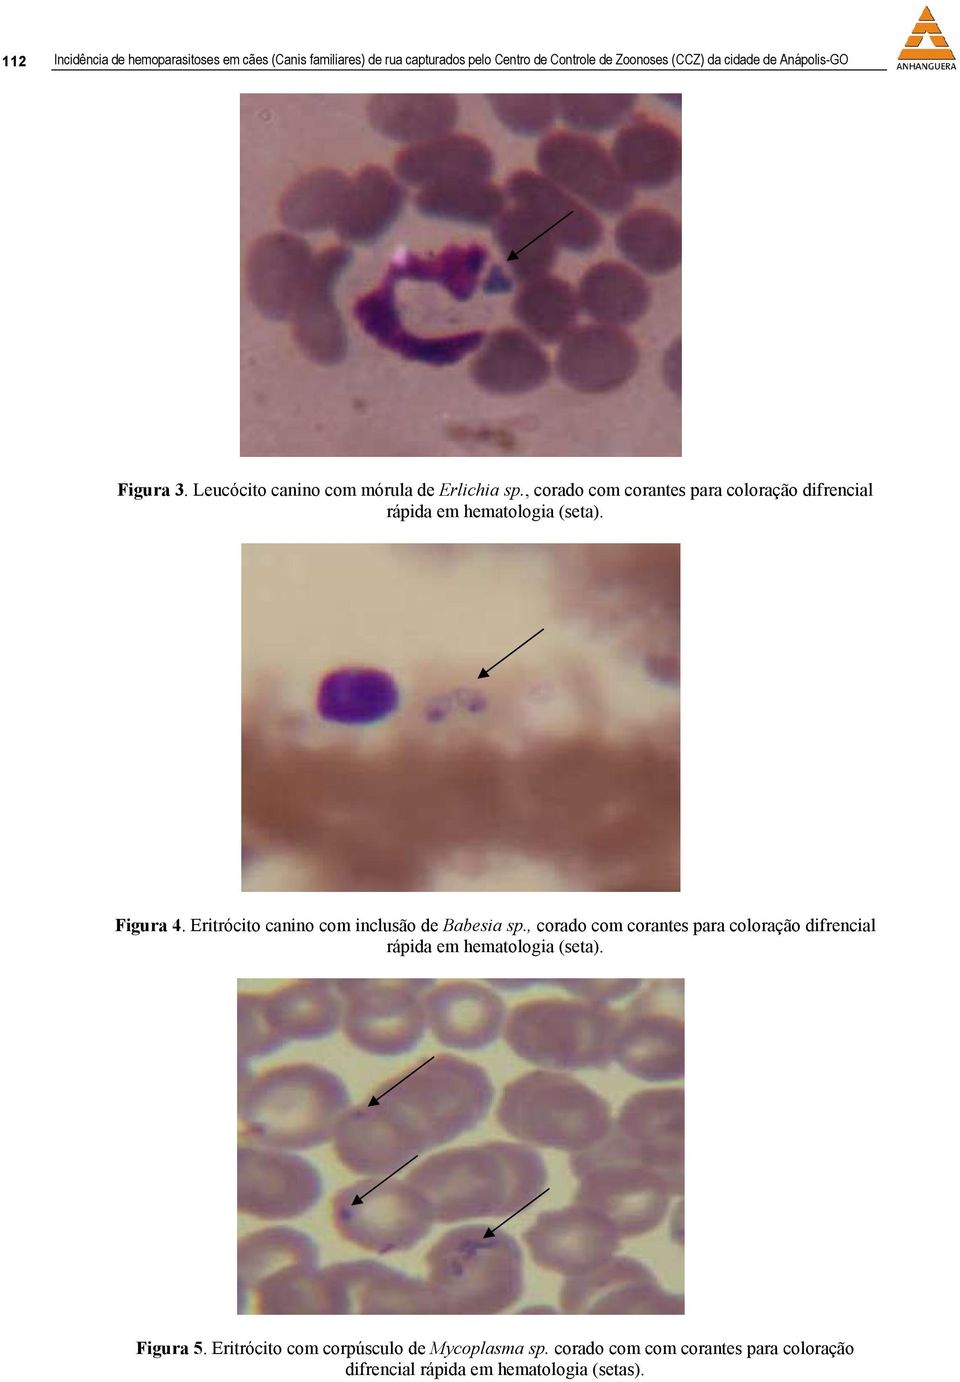 , corado com corantes para coloração difrencial rápida em hematologia (seta). Figura 4. Eritrócito canino com inclusão de Babesia sp.